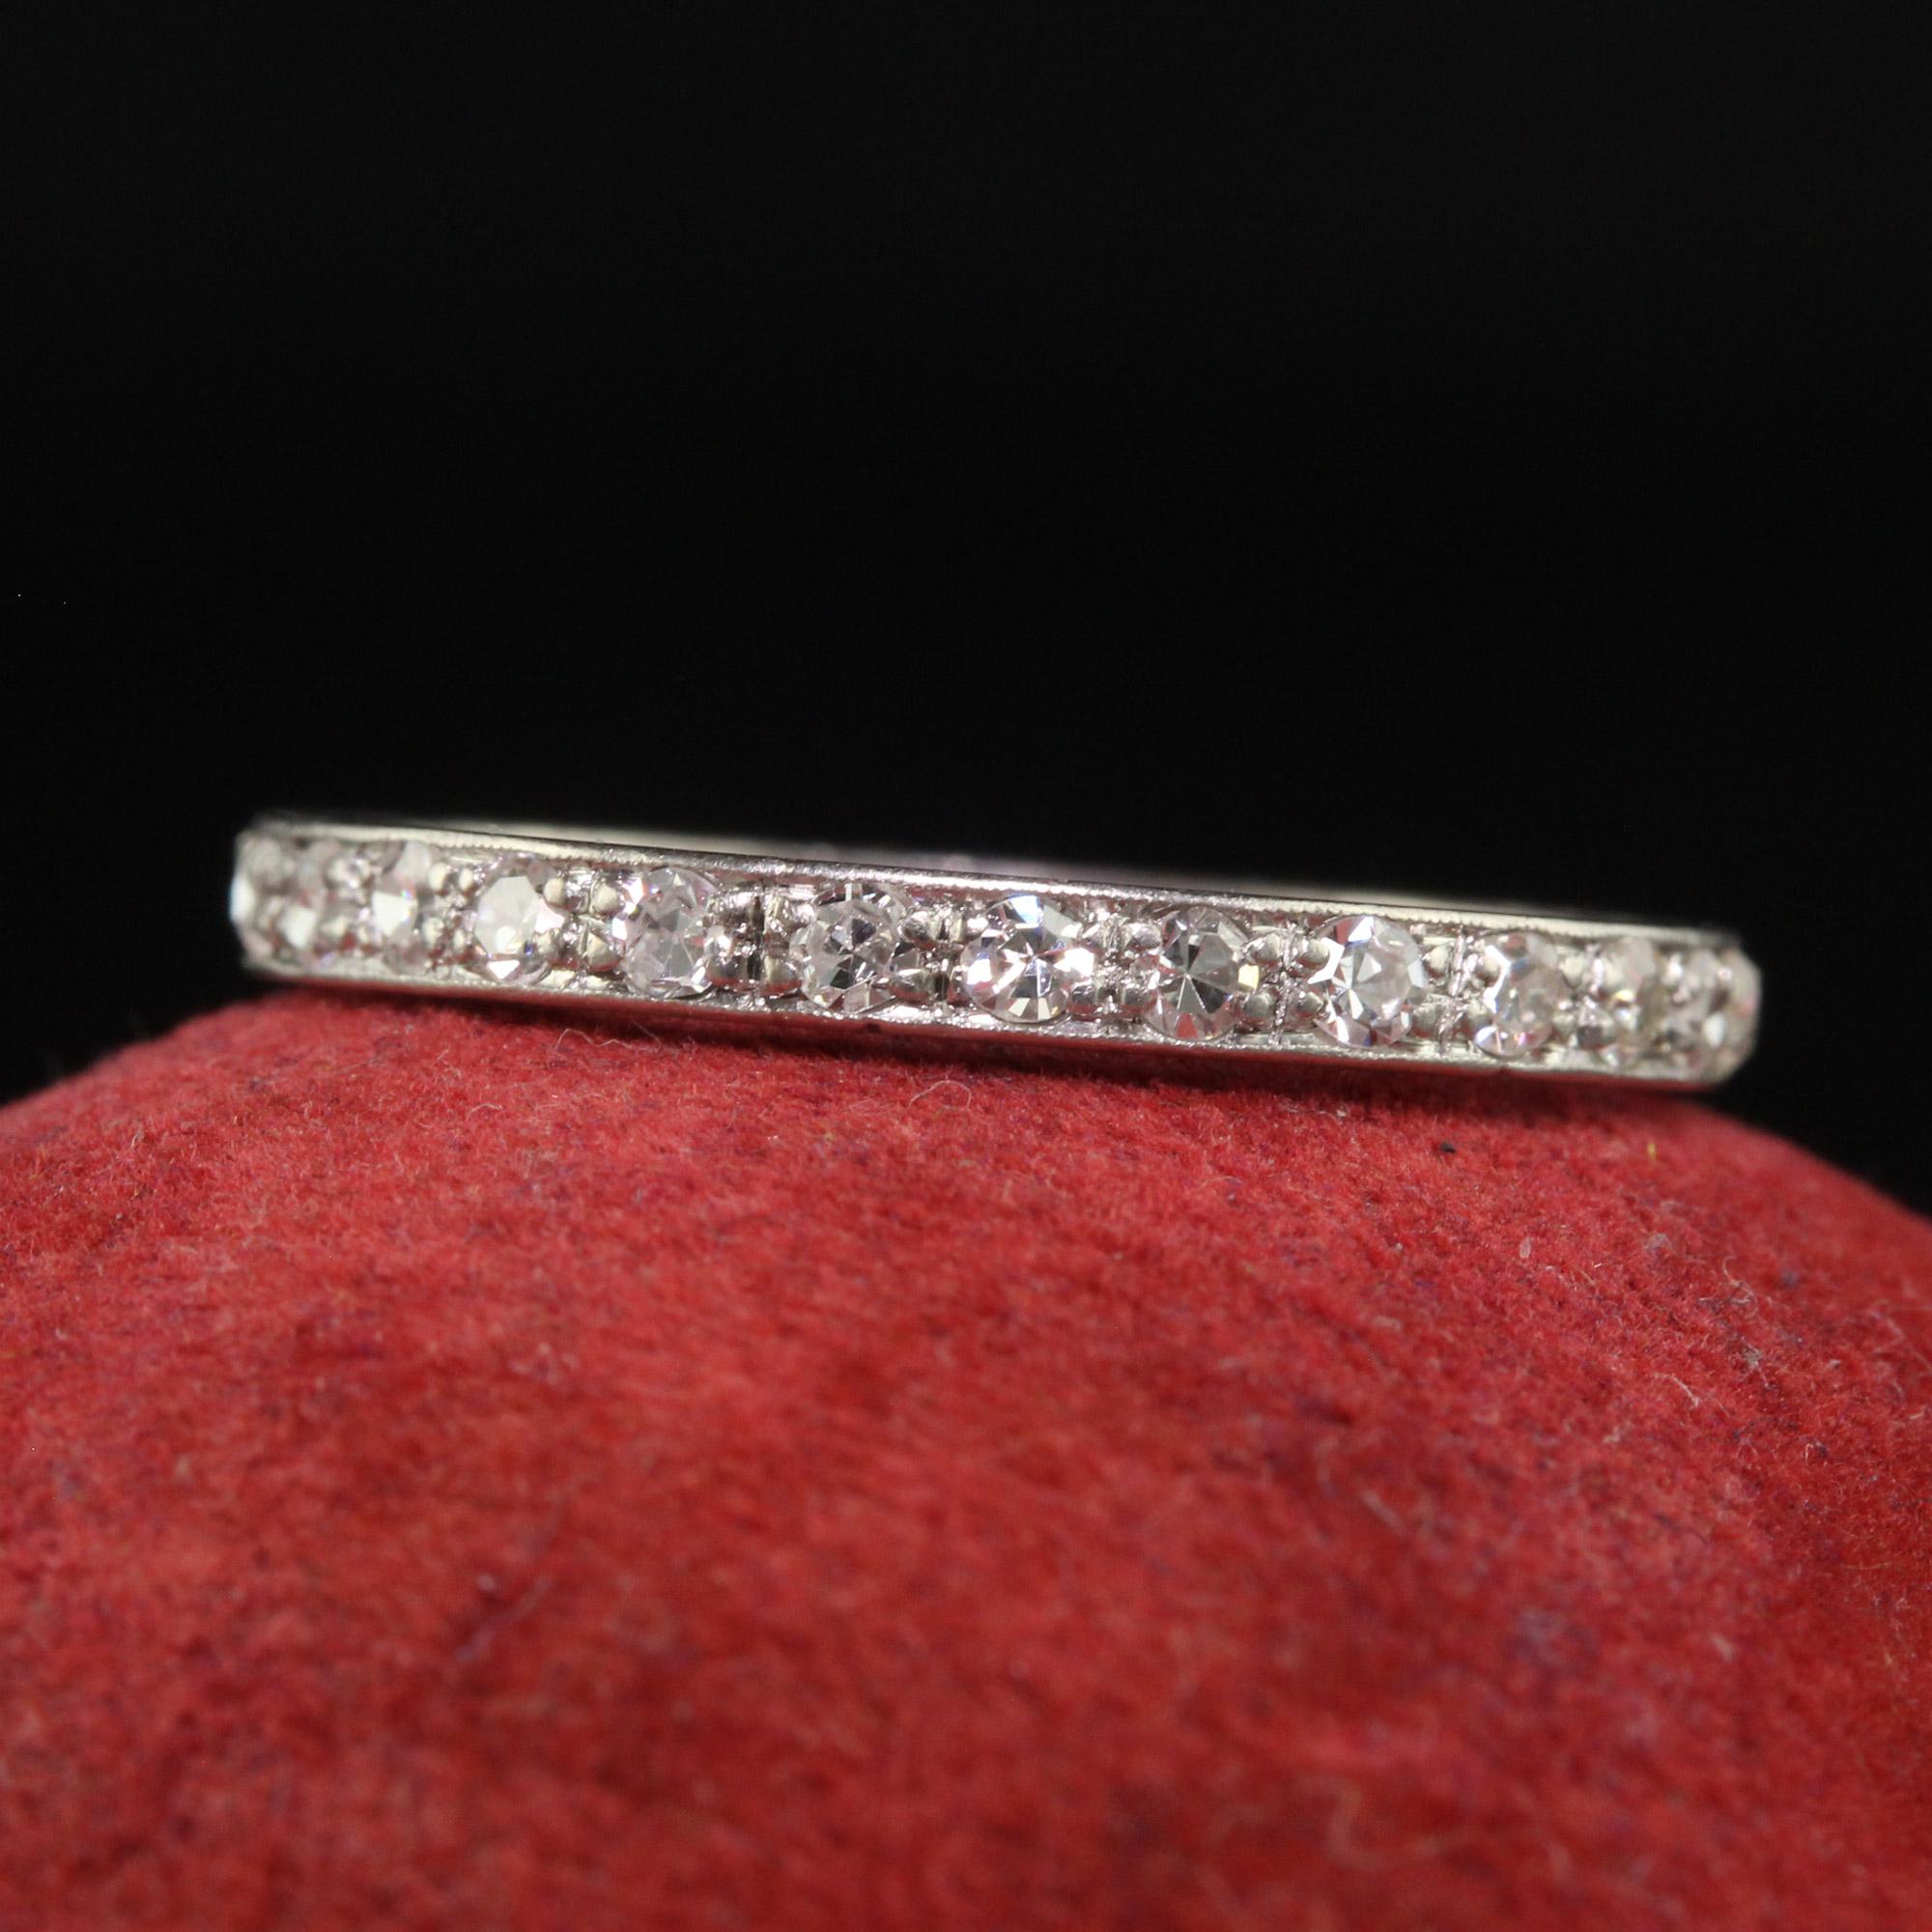 Schöne antike Art Deco Platin Single Cut Diamant graviert Eternity Band - Größe 6,5. Dieses schöne Art Deco-Diamantband für die Ewigkeit ist aus Platin gefertigt. Dieses schöne Band hat einzelne geschliffene Diamanten, die um das gesamte Band